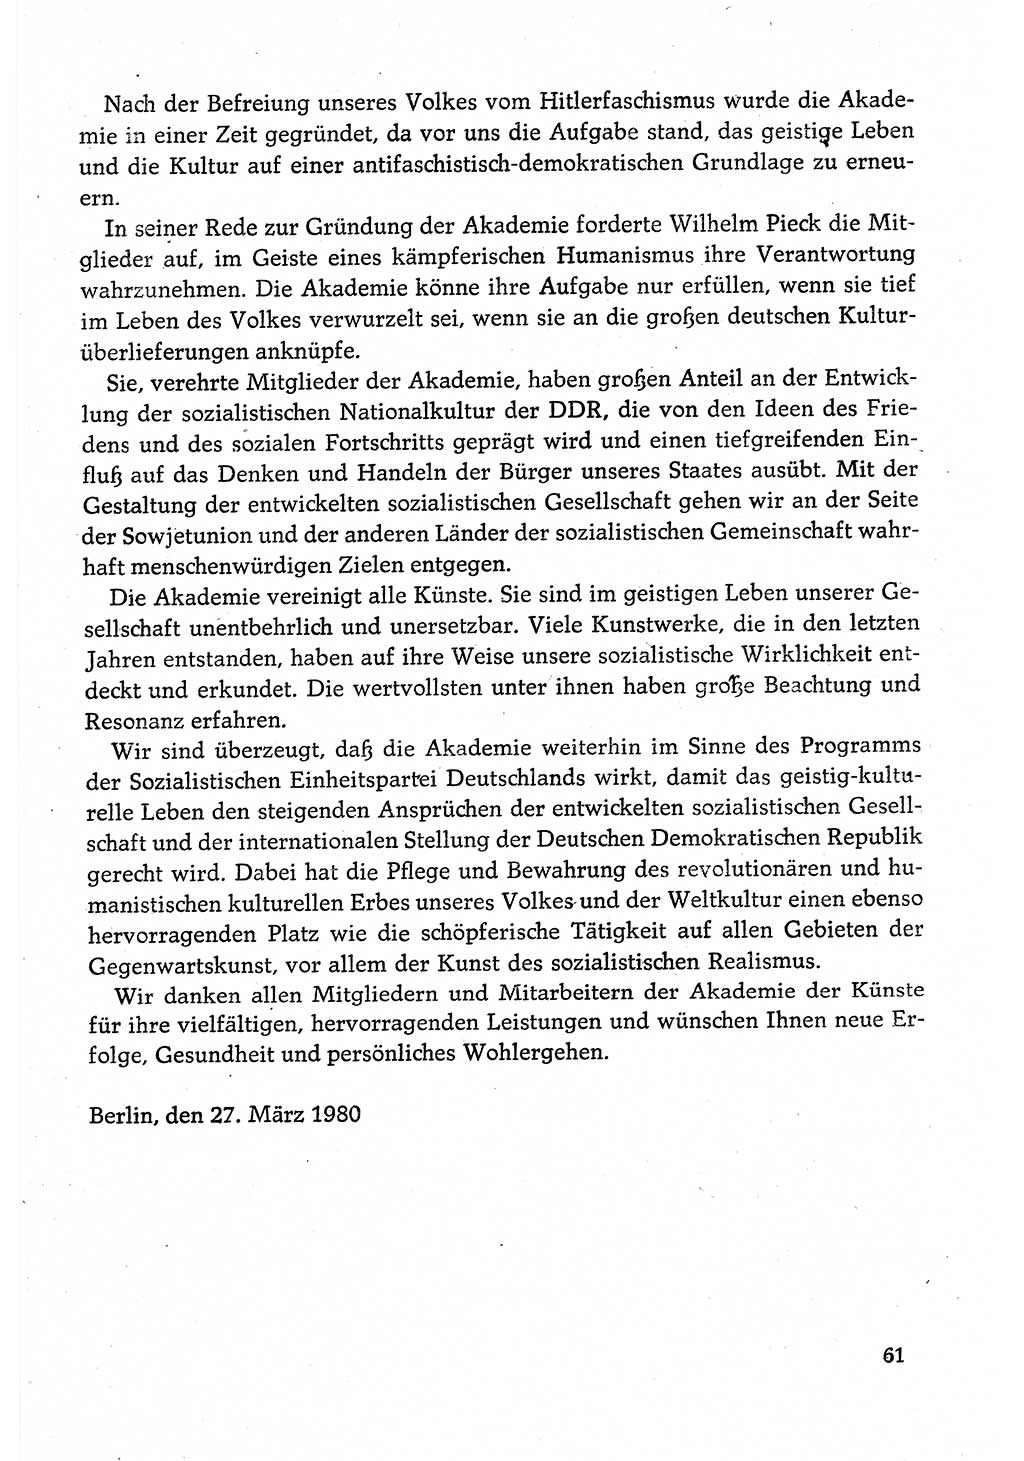 Dokumente der Sozialistischen Einheitspartei Deutschlands (SED) [Deutsche Demokratische Republik (DDR)] 1980-1981, Seite 61 (Dok. SED DDR 1980-1981, S. 61)